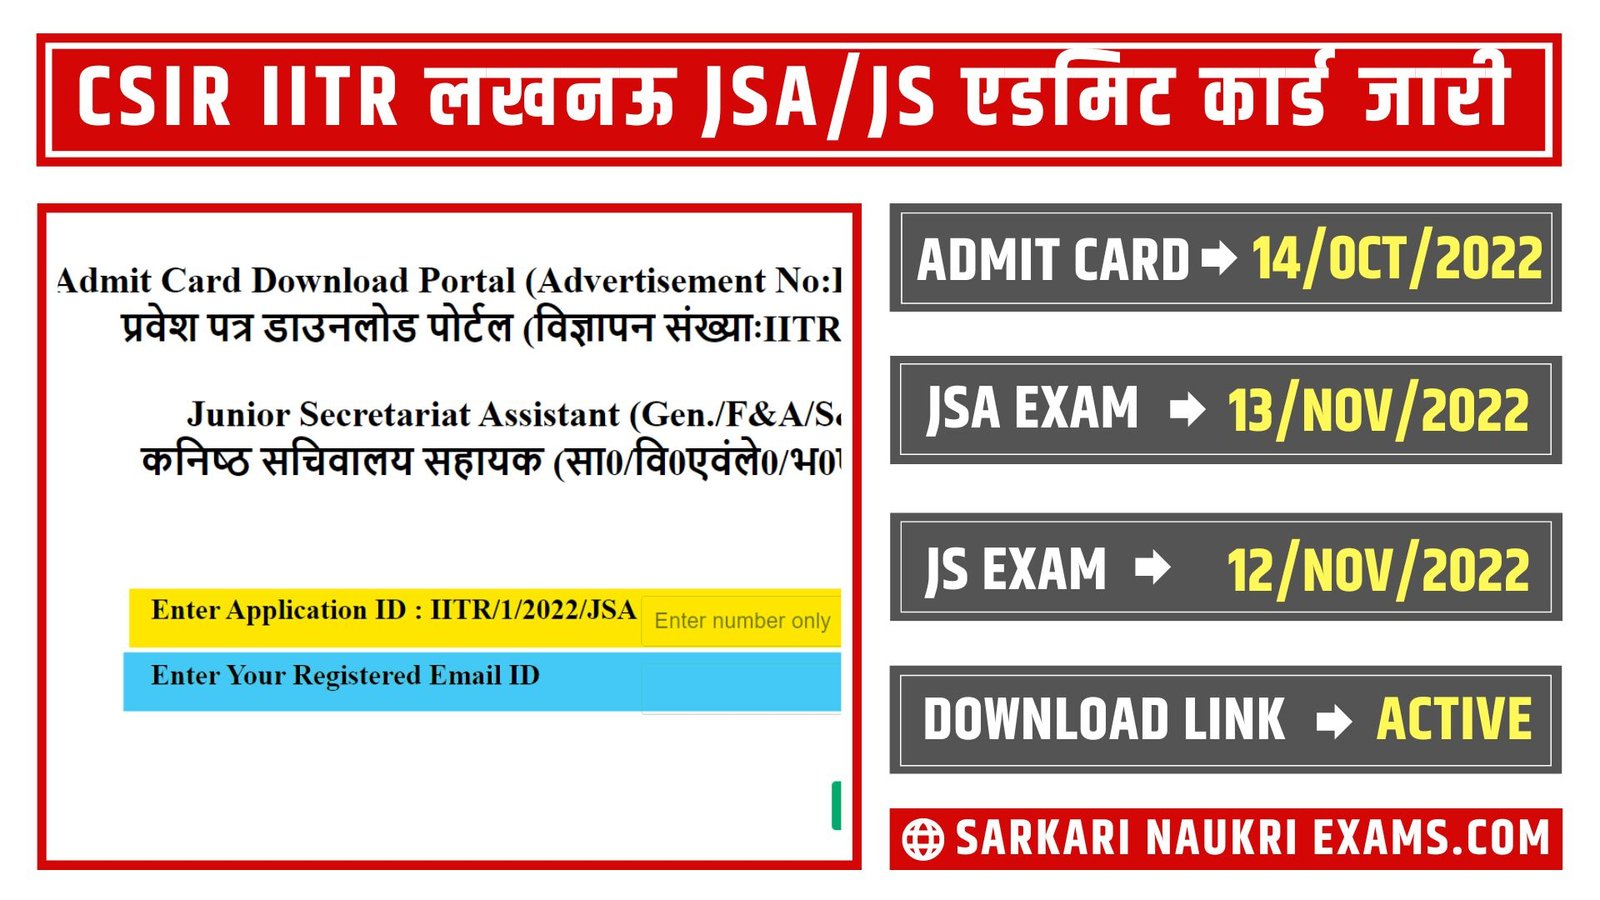 CSIR IITR Lucknow Admit Card 2022 (OUT!) | JSA, & JS Exam On 12 & 13 November 